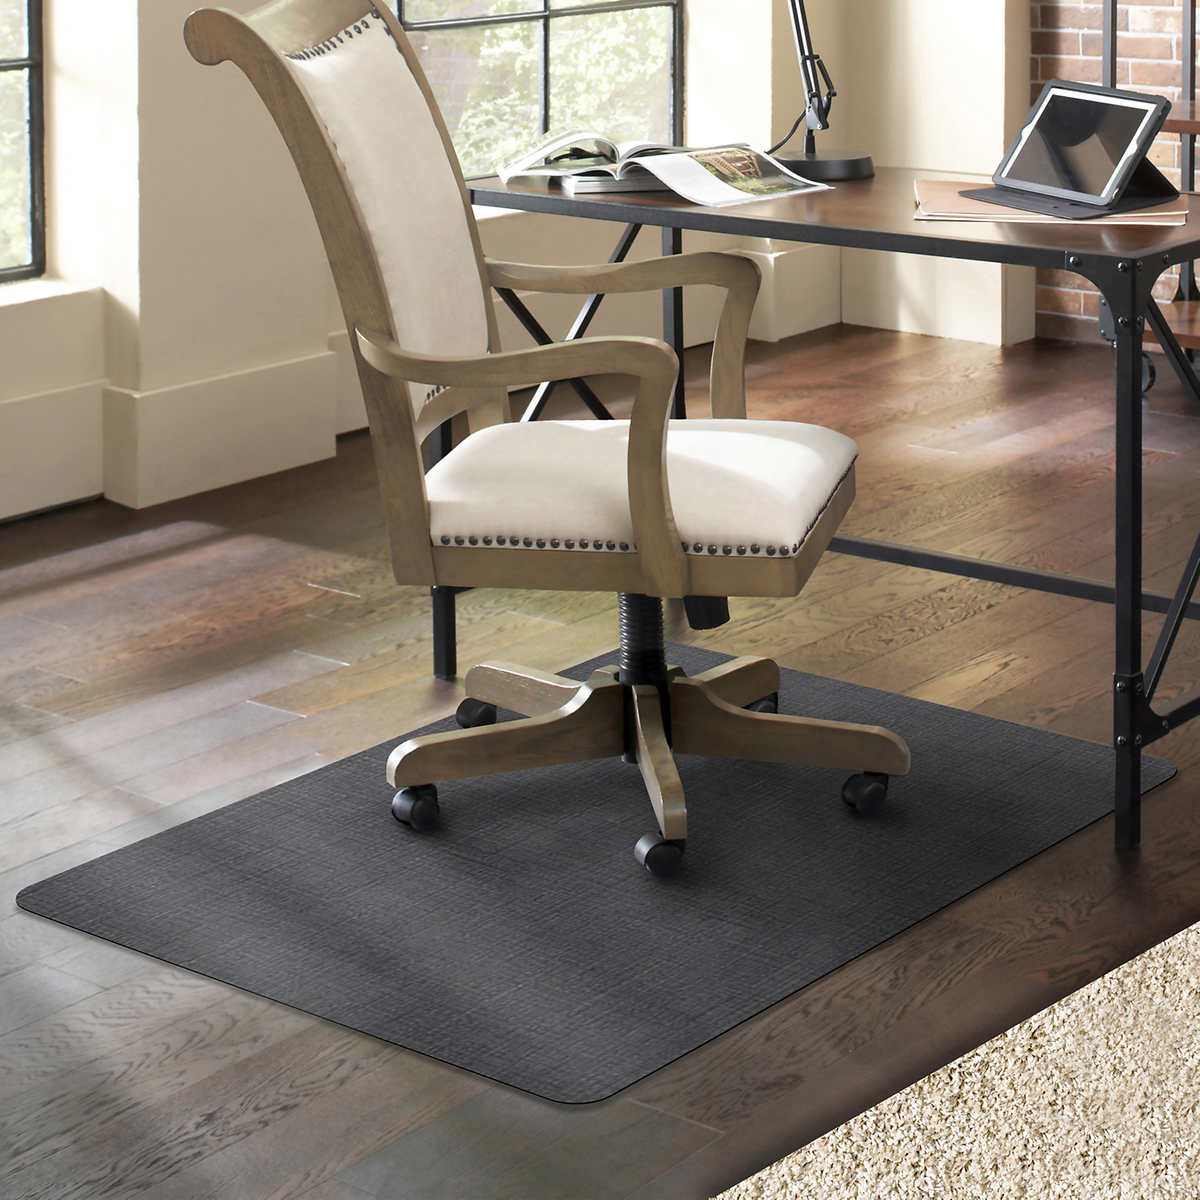 Es Robbins Trendsetter Designer Chair, Best Chair Mat For Hardwood Floors Reddit